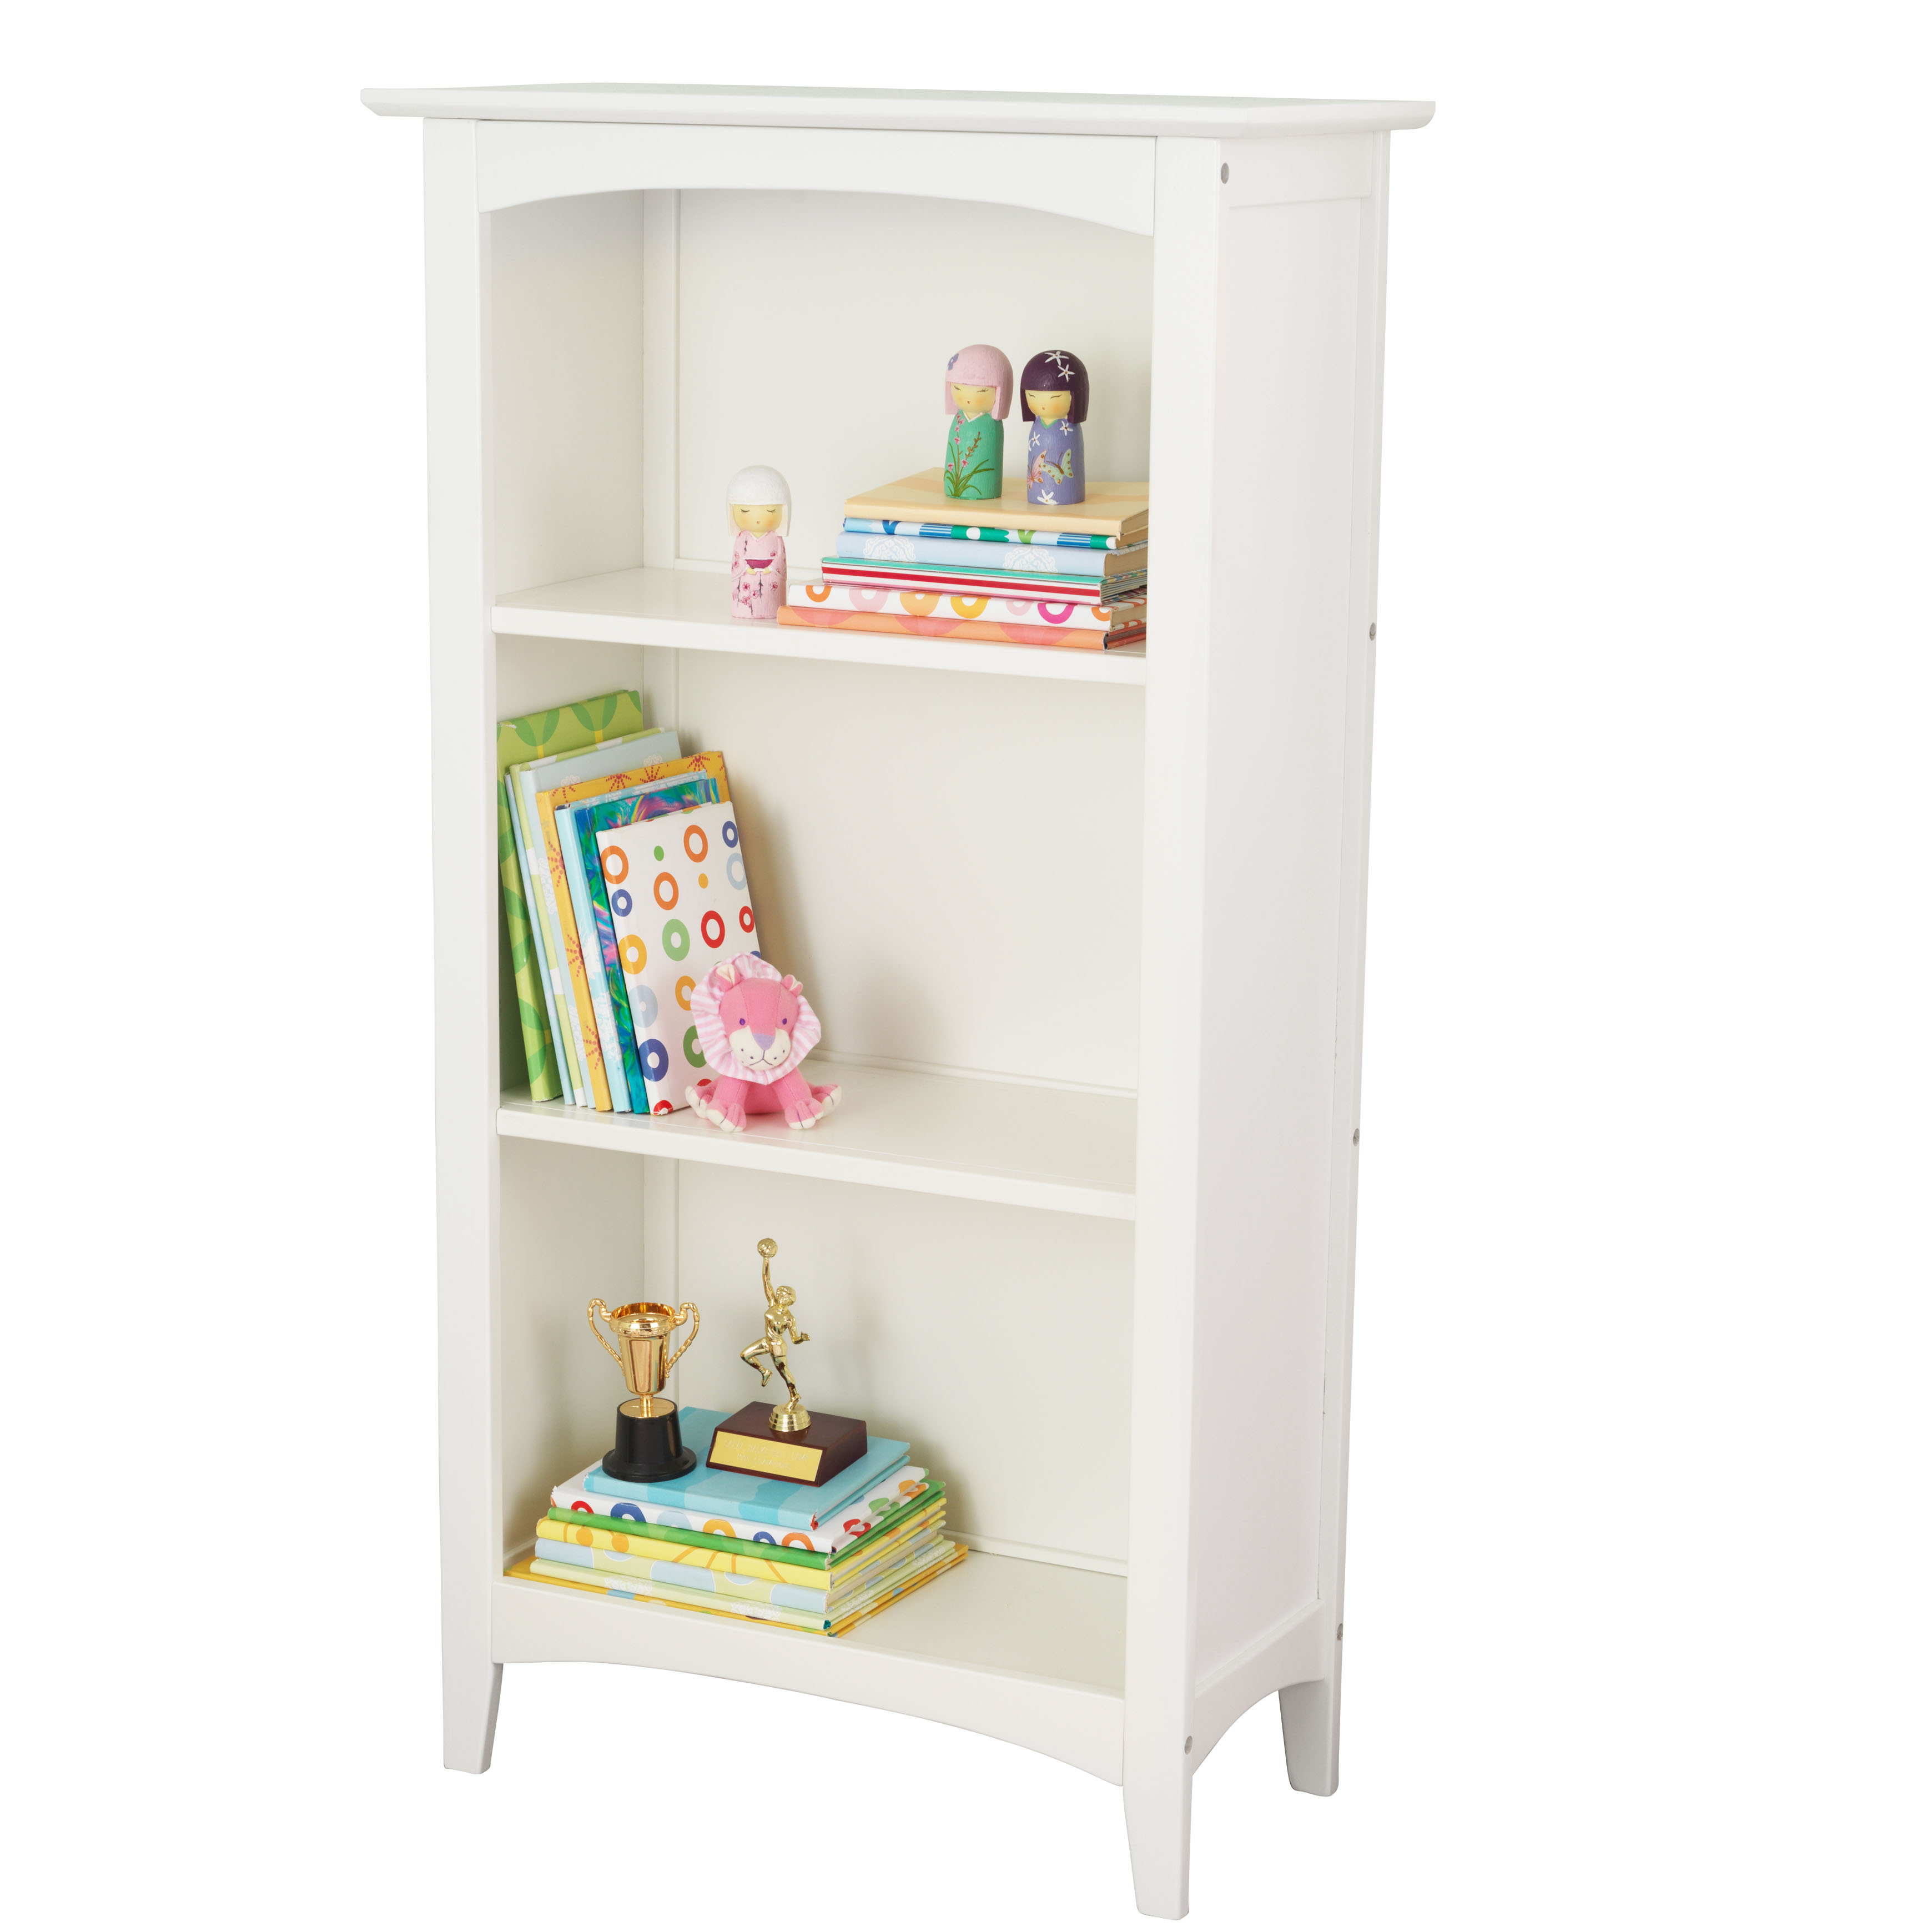 Kidkraft Avalon 3 Shelf Bookcase White 706943140017 Ebay